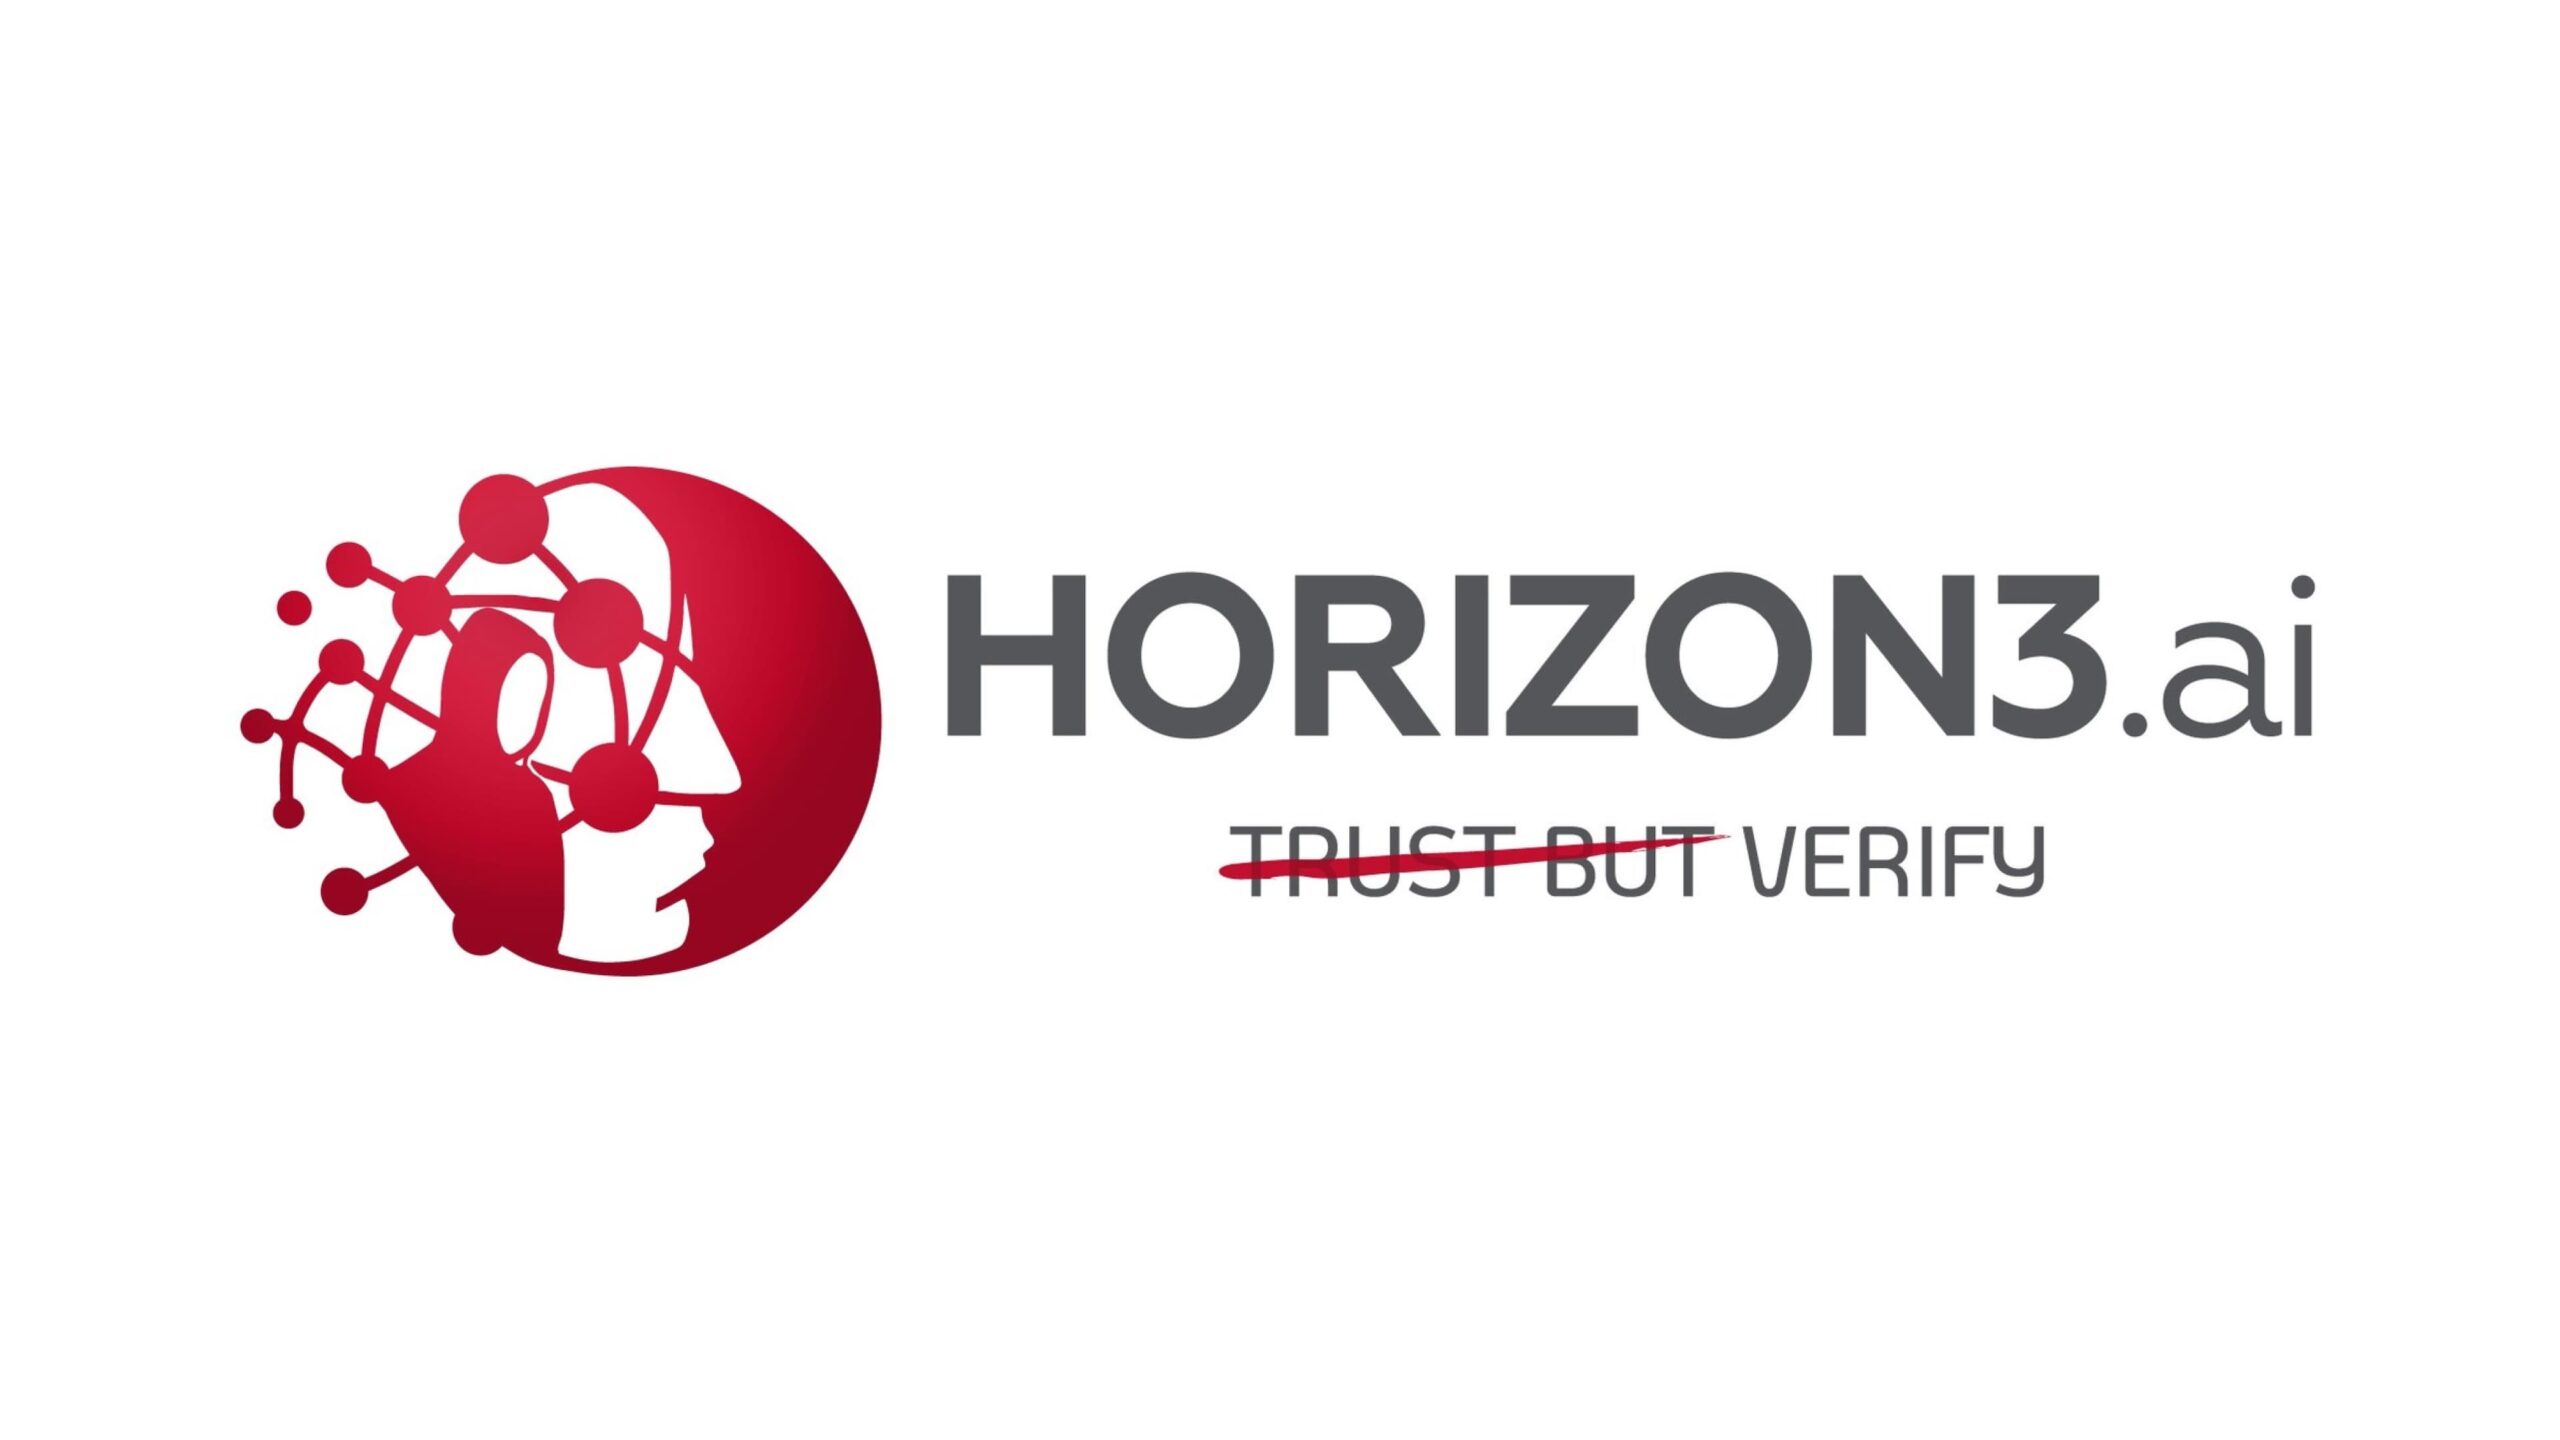 Horizon3がペンテストプラットフォームの拡大のために4,000万ドルを調達